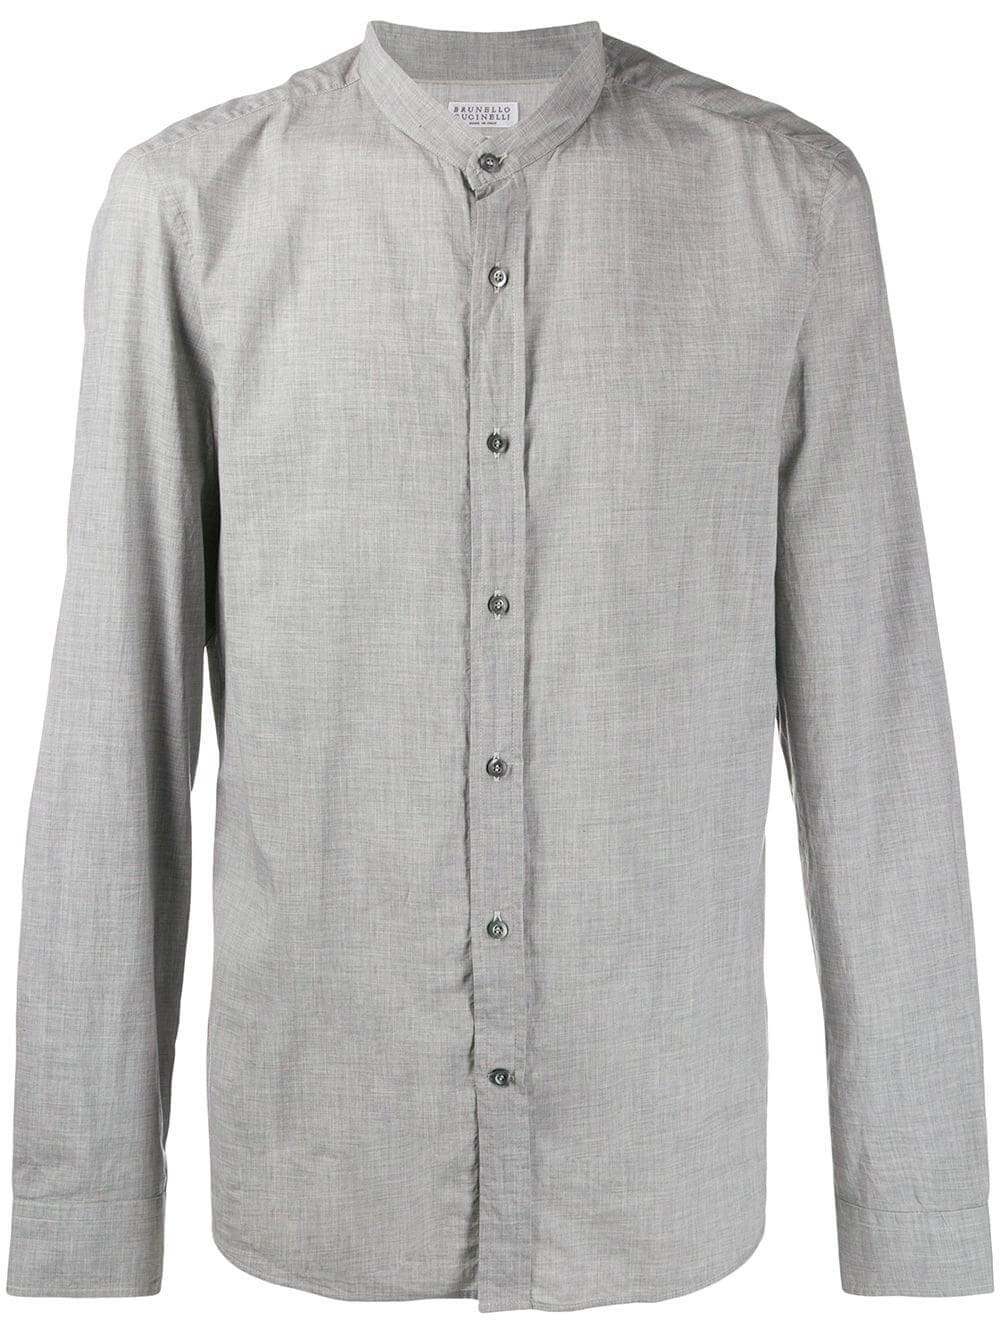 グレーシャツ コーデ メンズ特集 都会的な品を備えた男の着こなし アイテムを紹介 メンズファッションメディア Otokomae 男前研究所